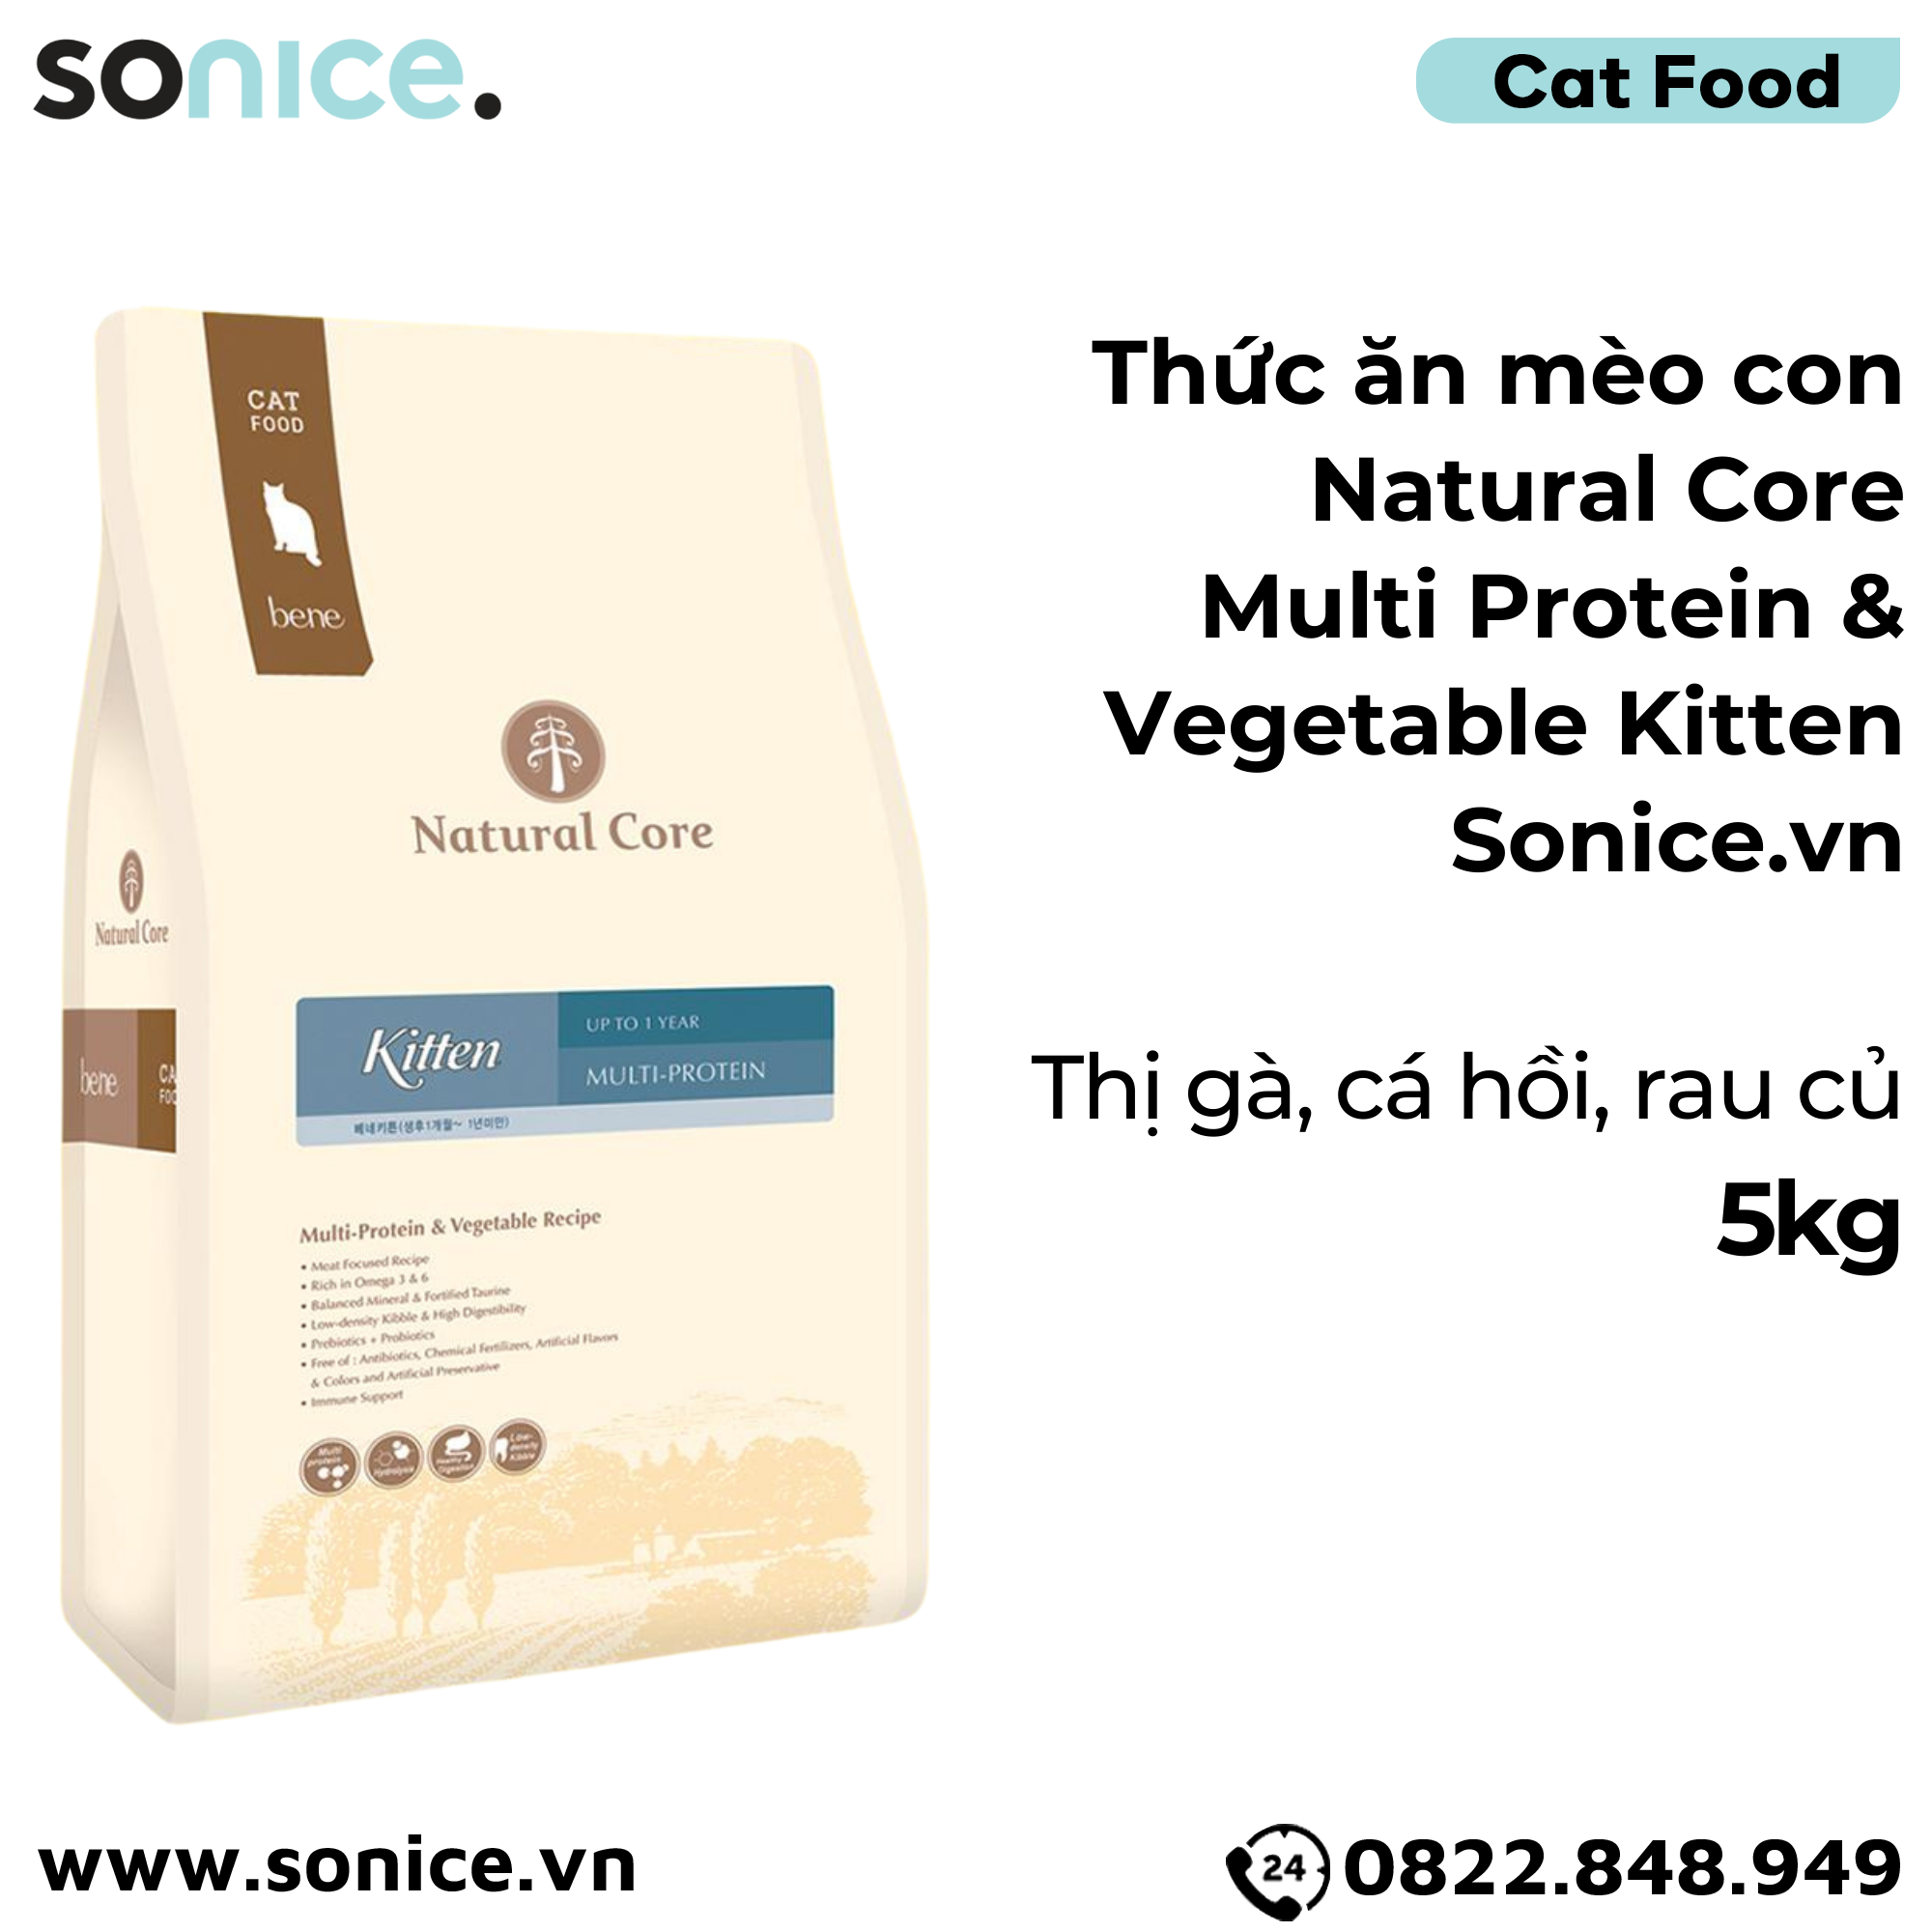  Thức ăn mèo con Natural Core Multi Protein & Vegetable Kitten 5kg - Thịt gà, cá hồi, rau củ SONICE. 